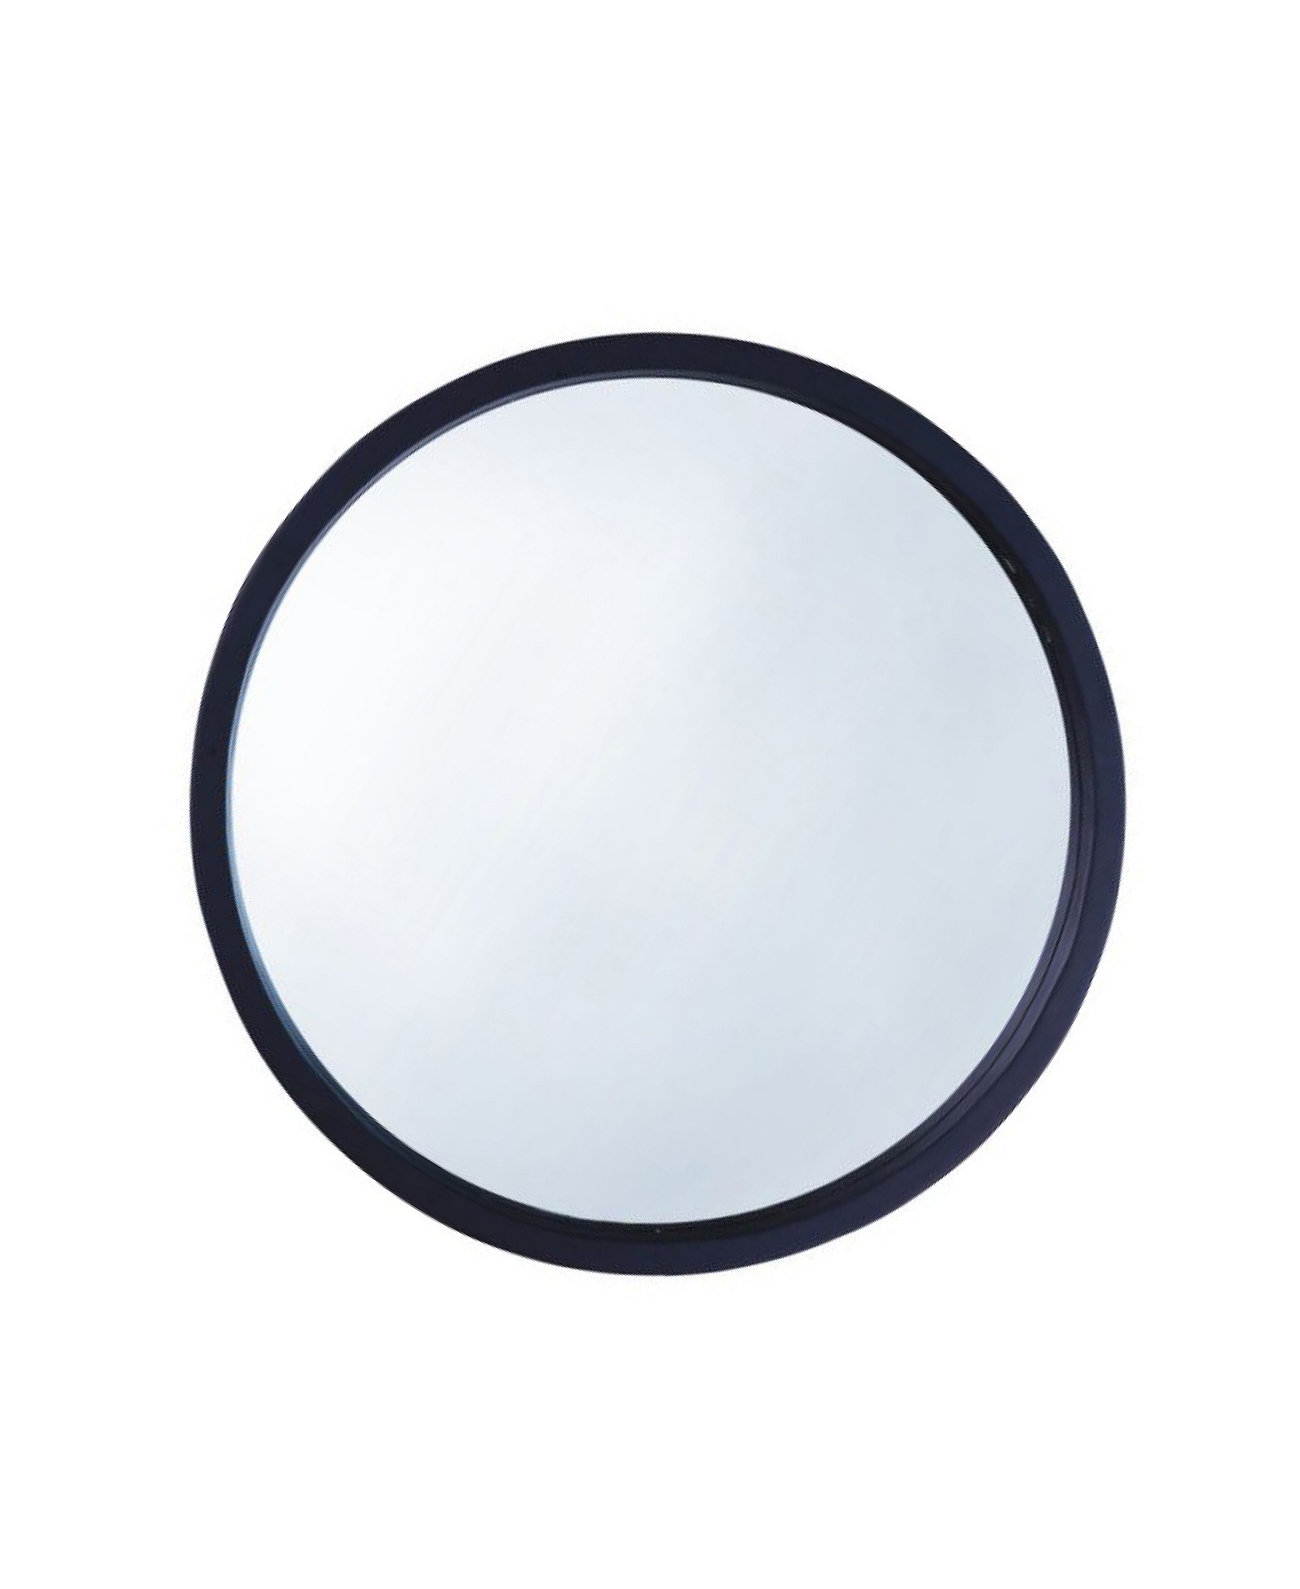 Настенное зеркало для ванной комнаты в круглой деревянной раме, глубина 30 дюймов Mirrorize